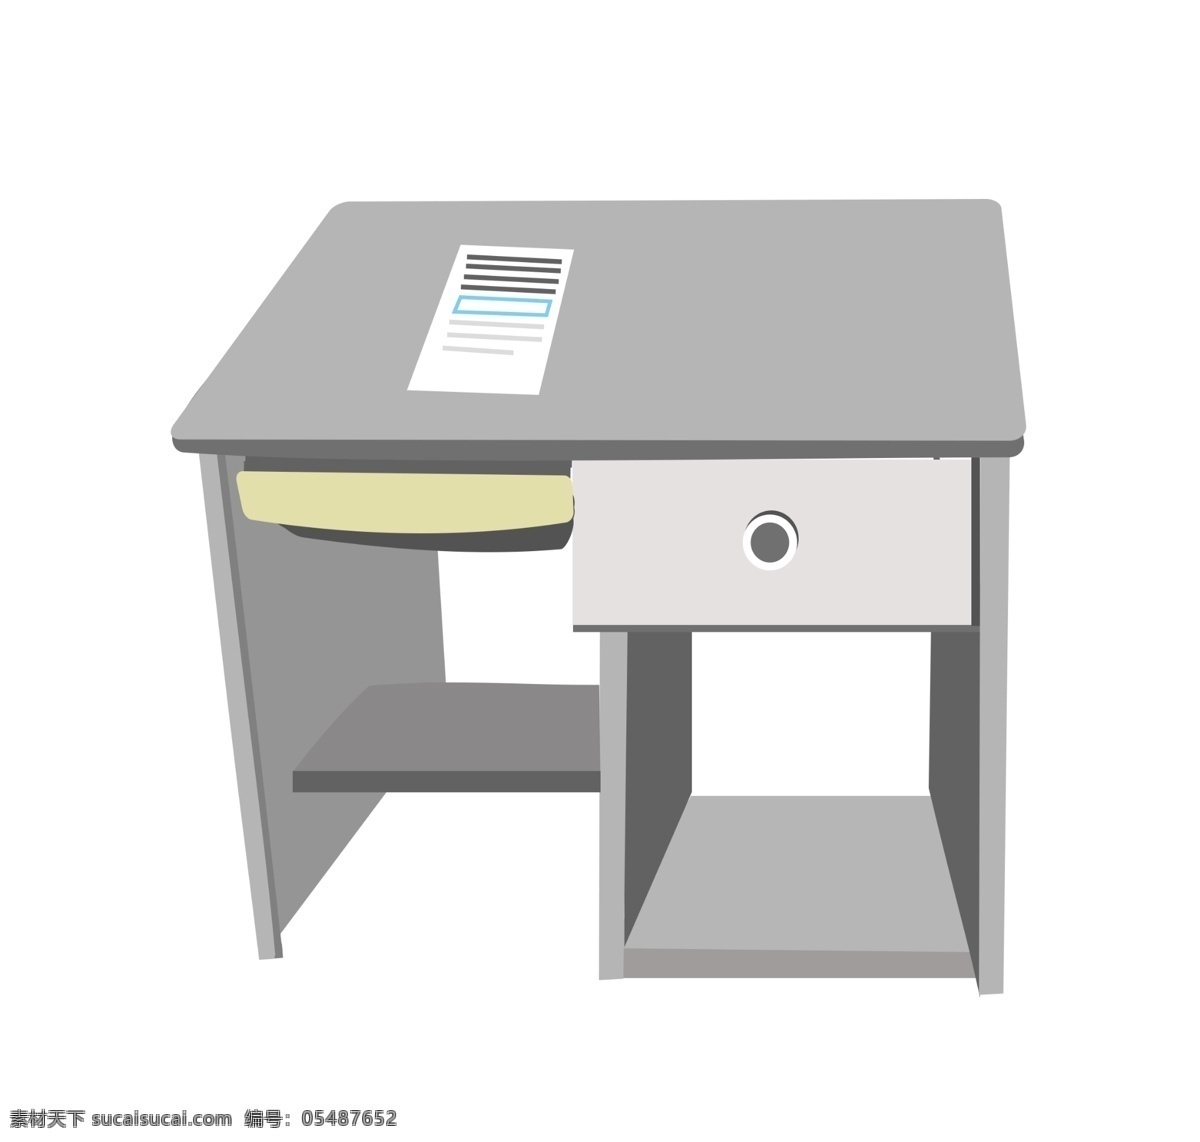 灰色 桌子 装饰 插画 灰色的桌子 漂亮的桌子 桌子装饰 桌子插画 立体桌子 卡通桌子 精美桌子